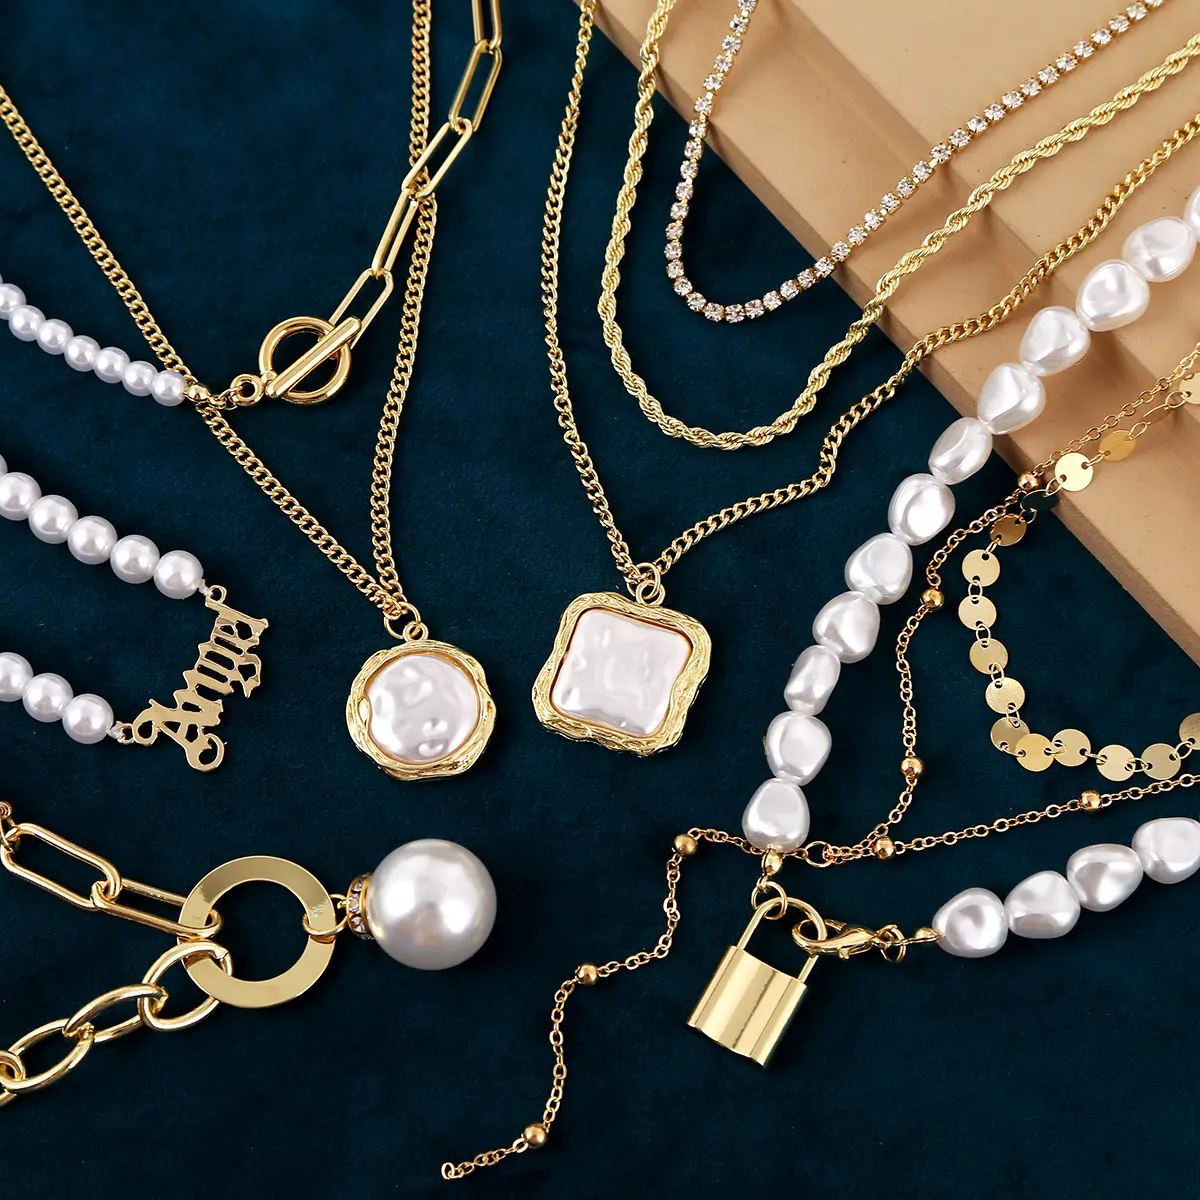 Baroque kalung mutiara dalam aksesori trendi kalung Choker mutiara helai pendek kecil rantai dapat disesuaikan perhiasan buatan tangan Vintage